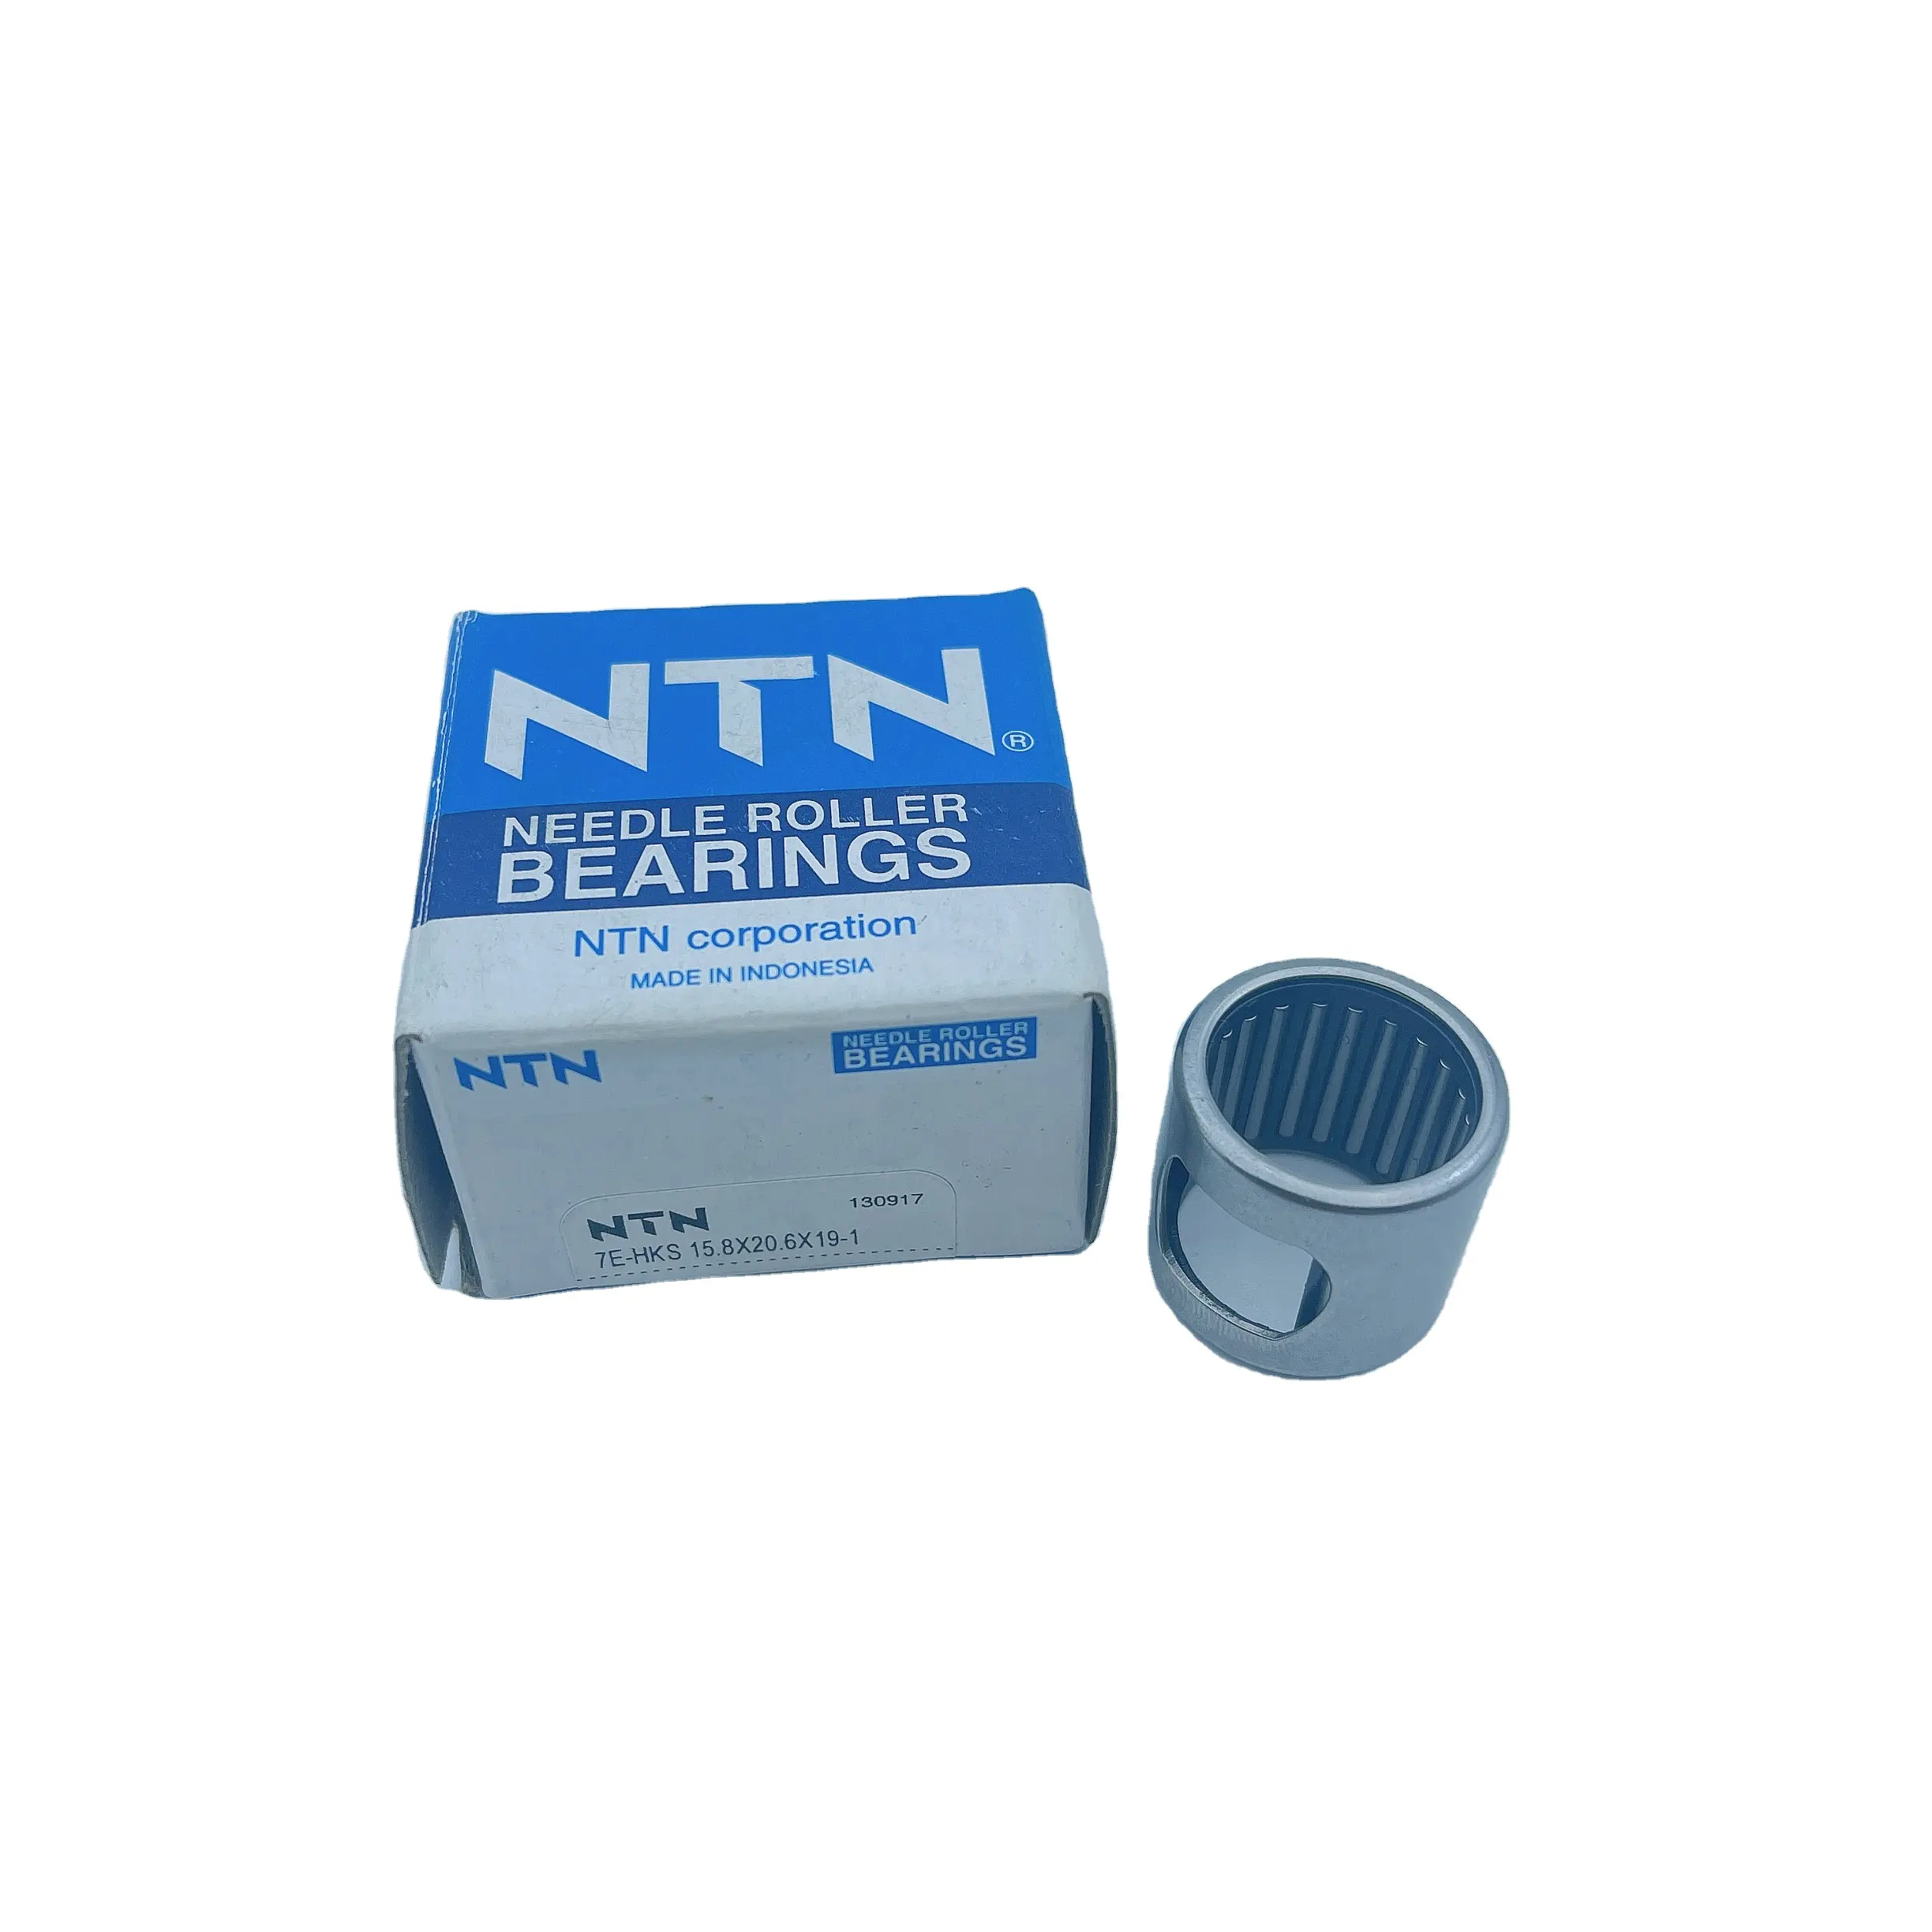 7e-hks 15.8x20.6x19-1 NTN Radial Needle Roller Bearing Cylindrical Roller Bearing